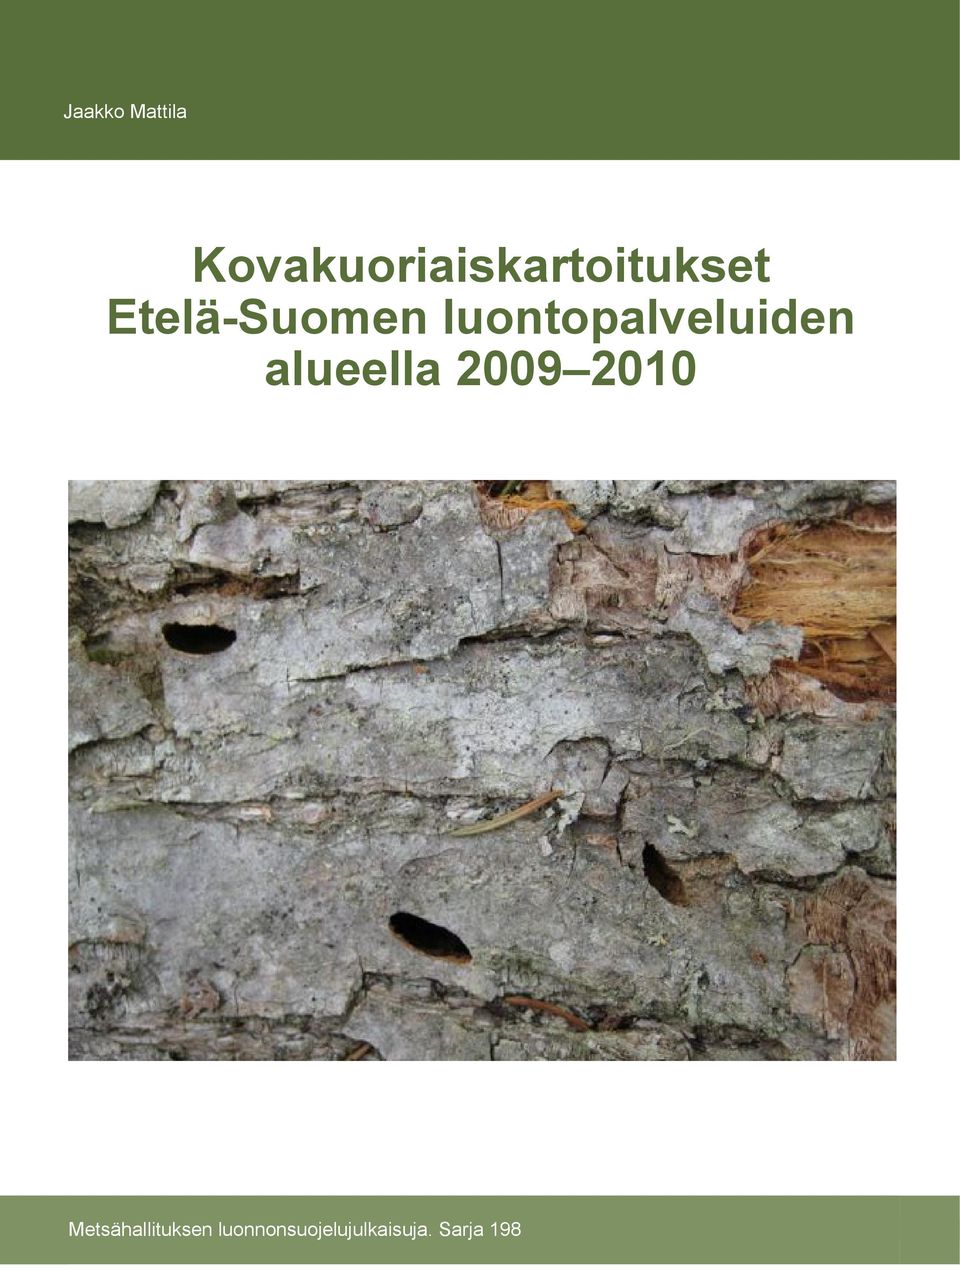 Etelä-Suomen luontopalveluiden